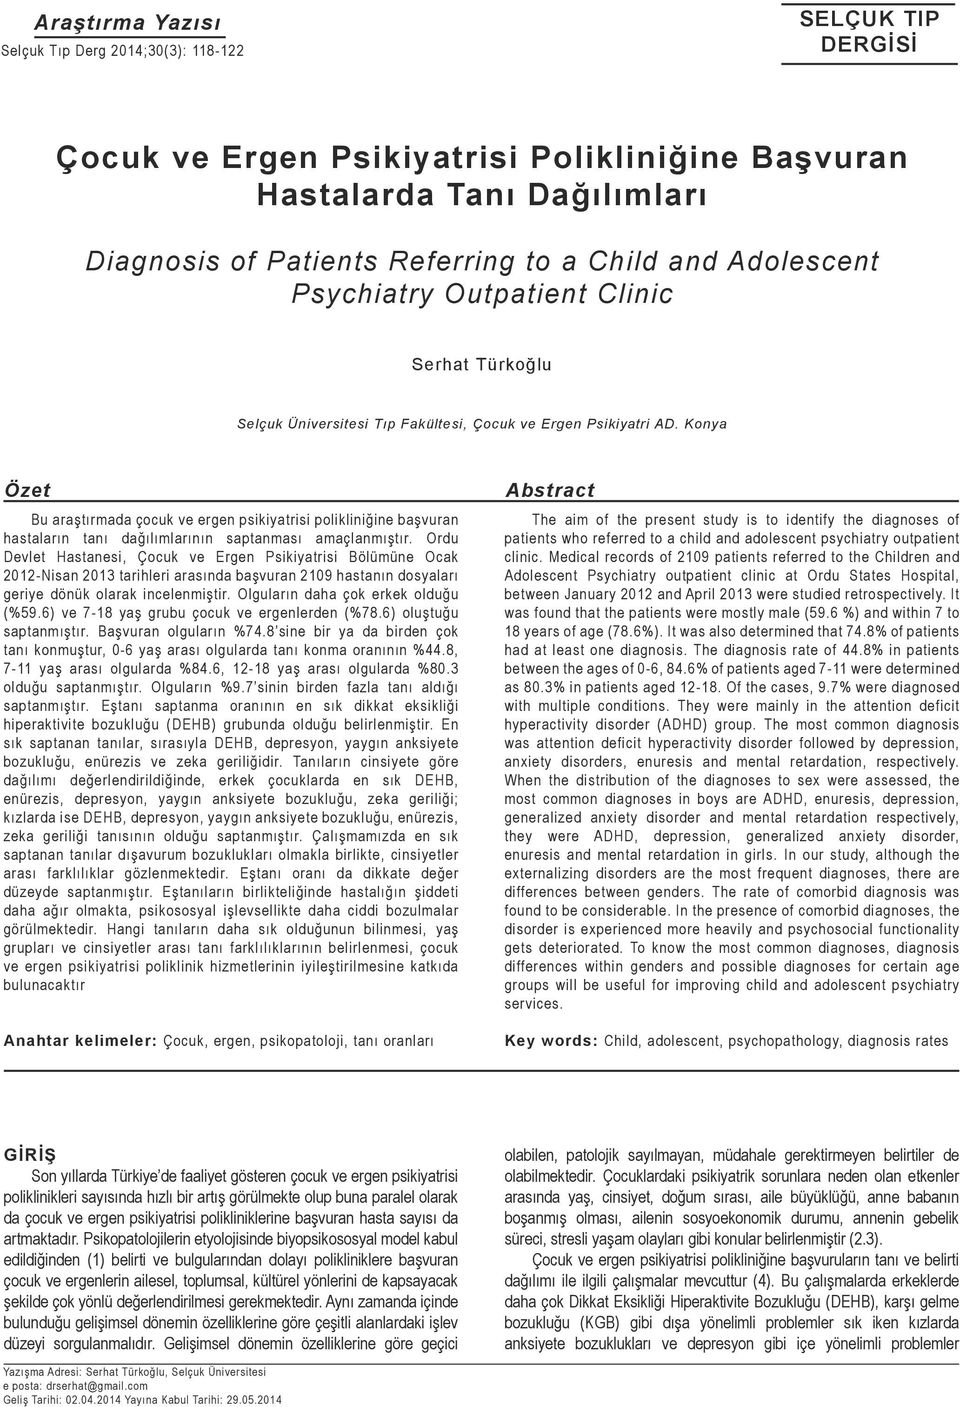 Konya Özet Bu araştırmada çocuk ve ergen psikiyatrisi polikliniğine başvuran hastaların tanı dağılımlarının saptanması amaçlanmıştır.